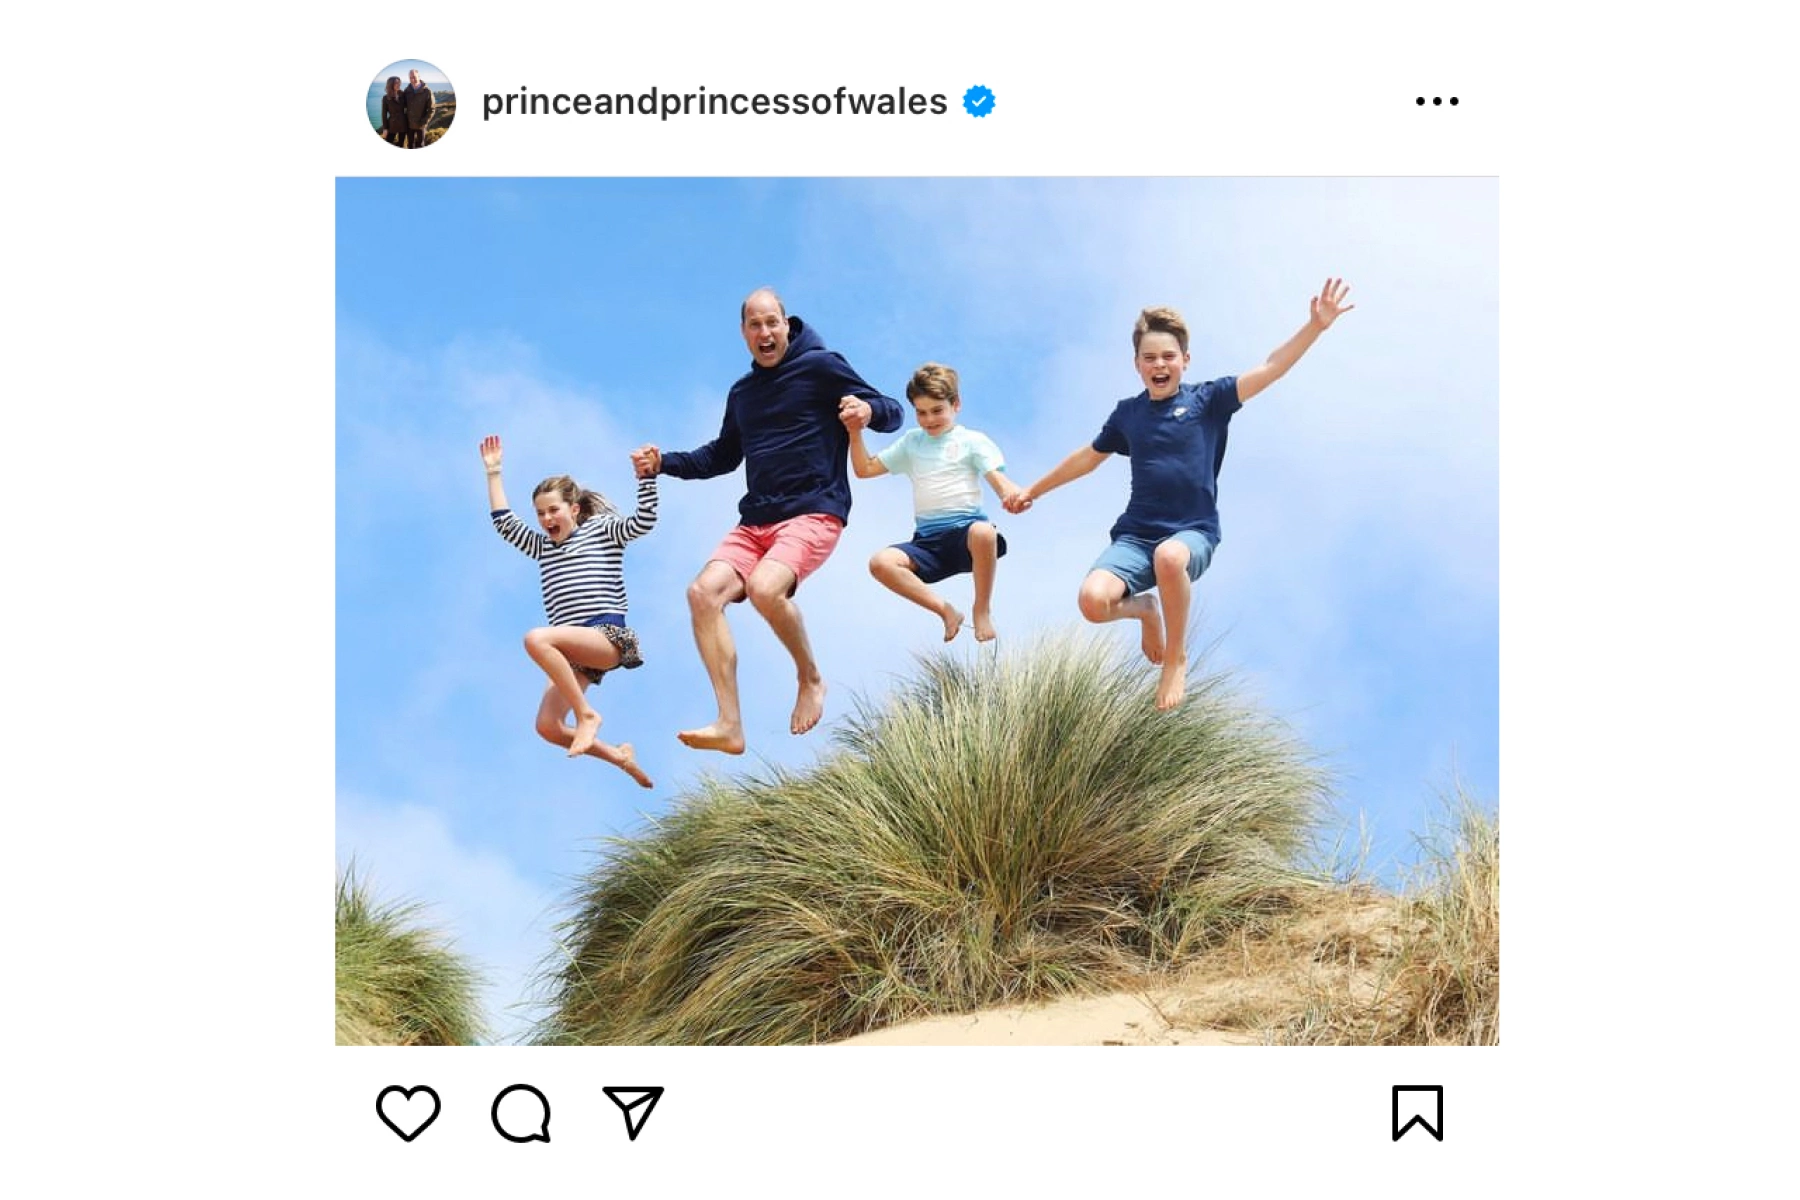 princeandprincessofwales / Instagram (входит в корпорацию Meta, признана экстремистской и запрещена в России)